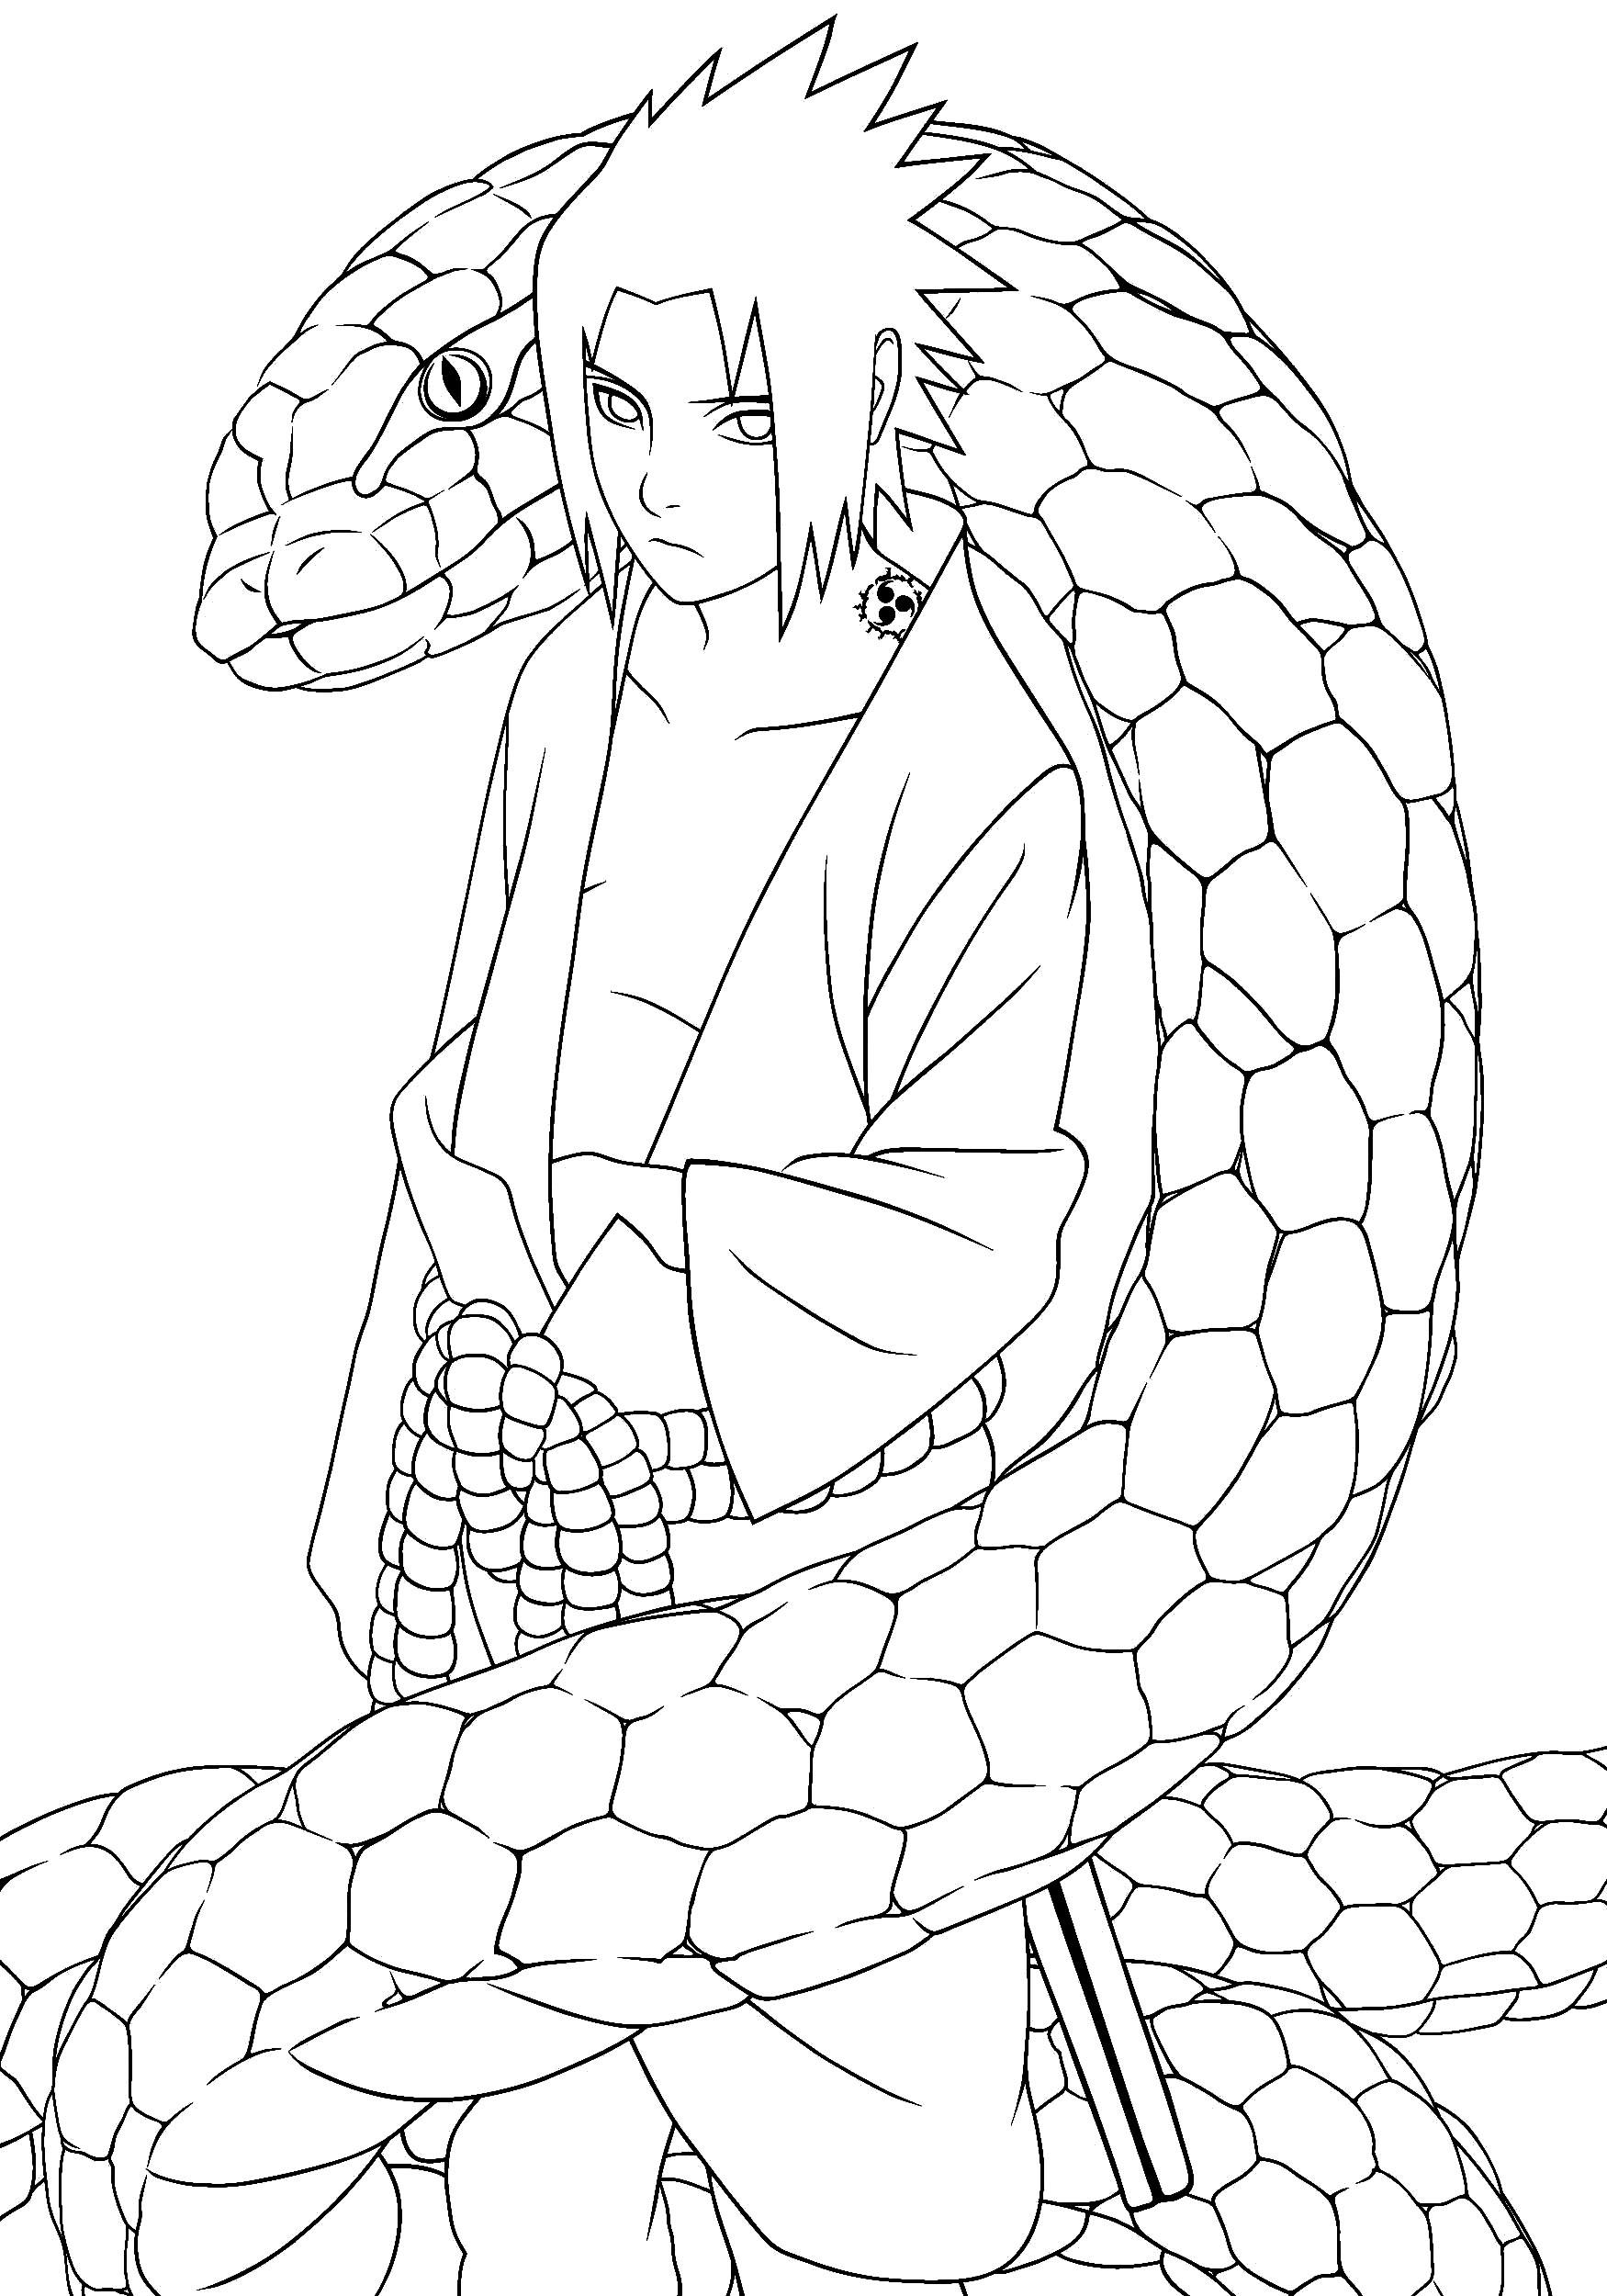 Саске Учиха со змеей. Аниме Наруто